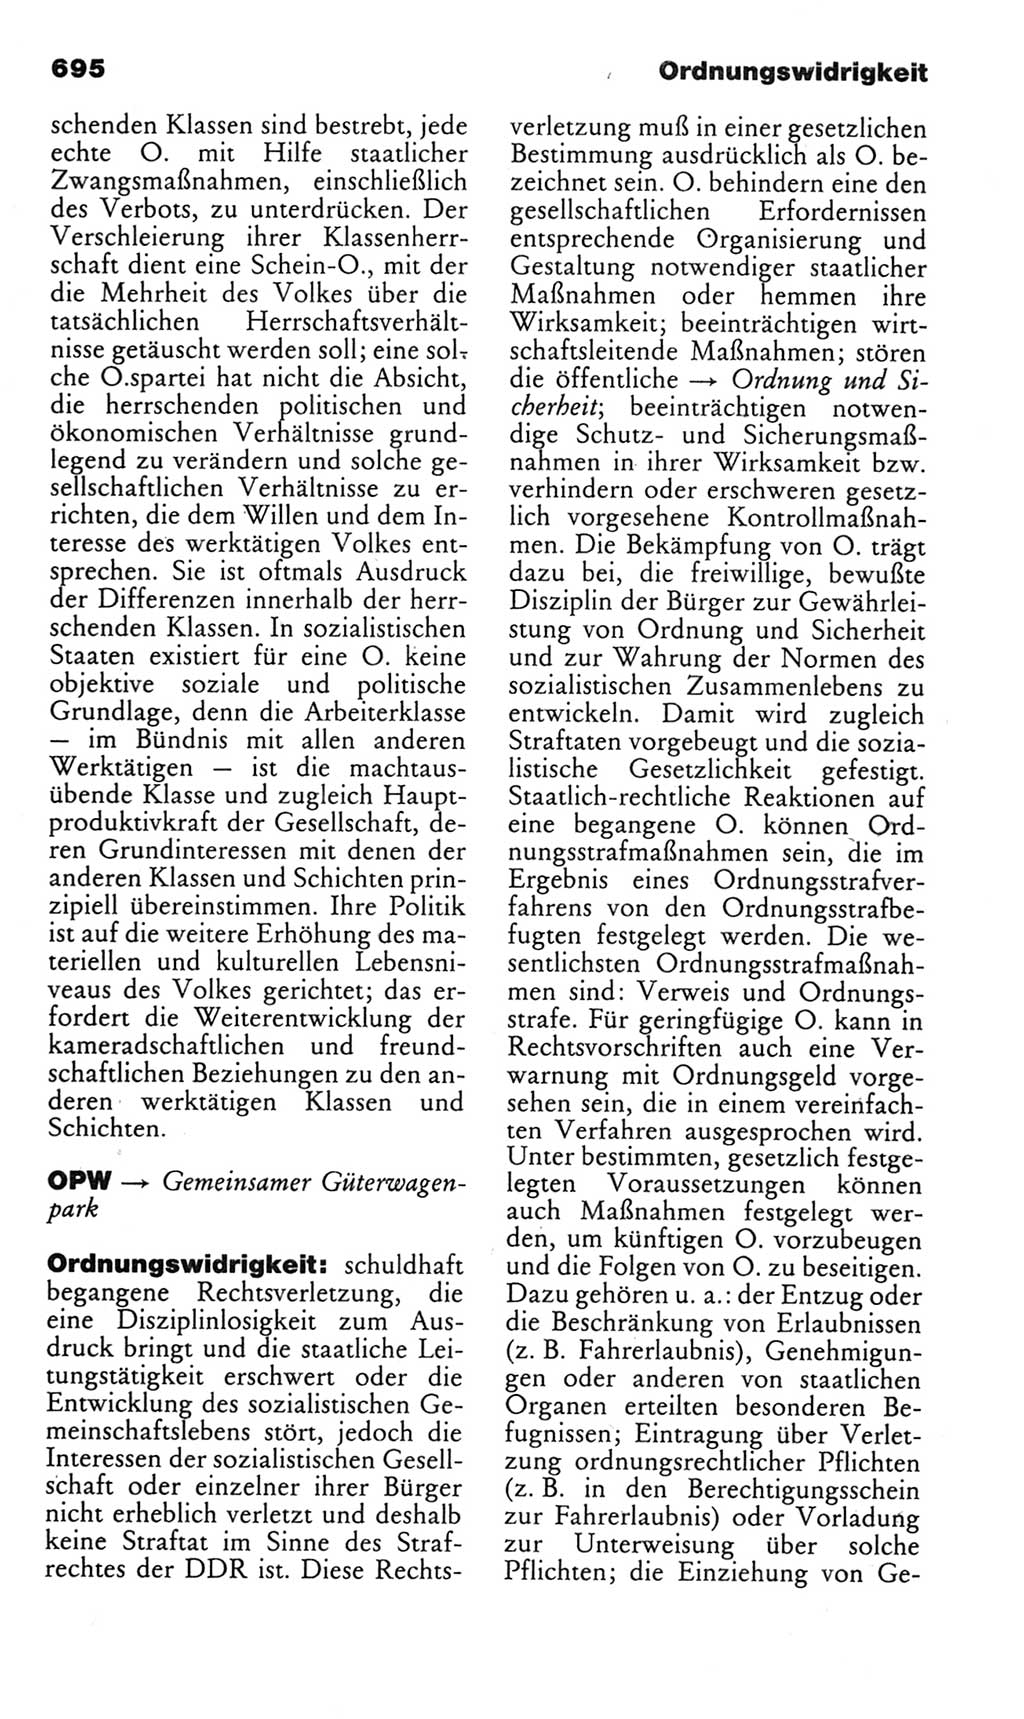 Kleines politisches Wörterbuch [Deutsche Demokratische Republik (DDR)] 1985, Seite 695 (Kl. pol. Wb. DDR 1985, S. 695)